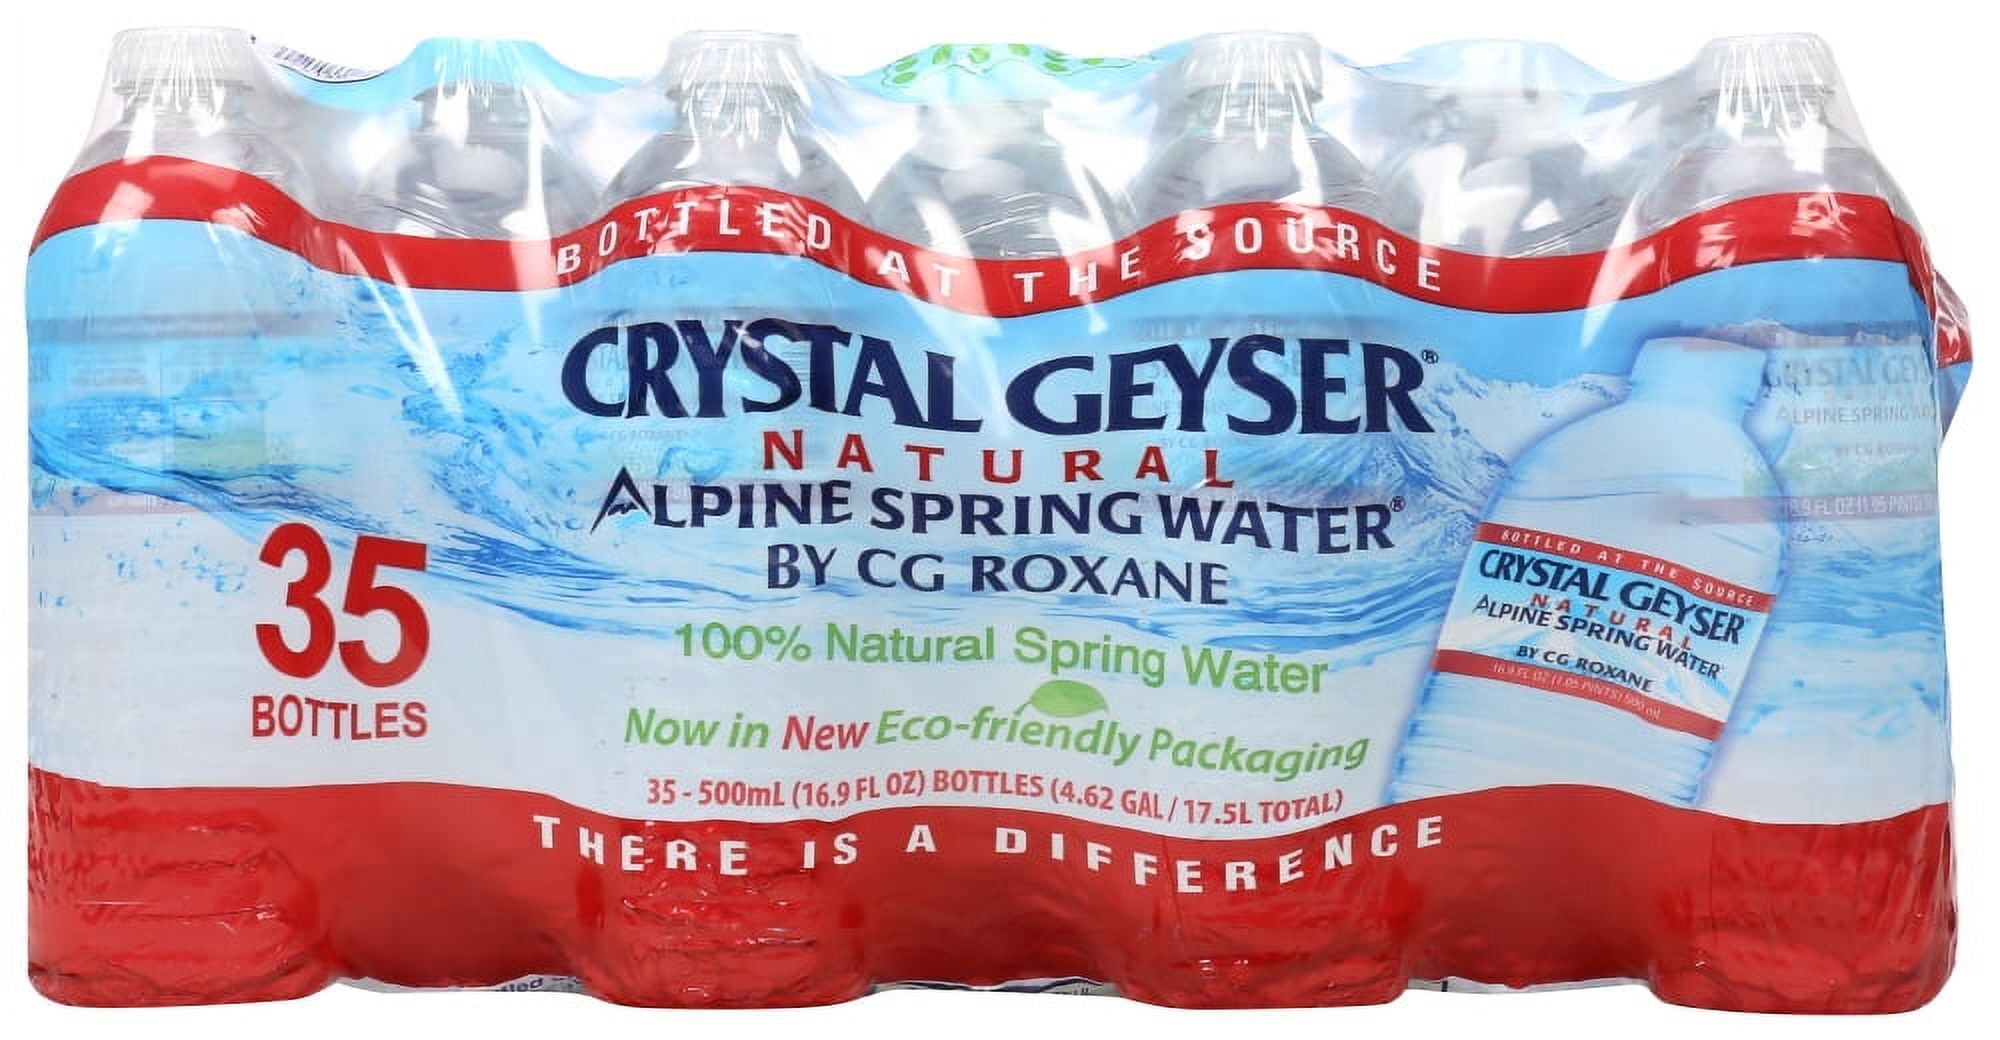 Crystal Geyser Natural Alpine Spring 16.9 Oz. Water Bottles, 24-Pack